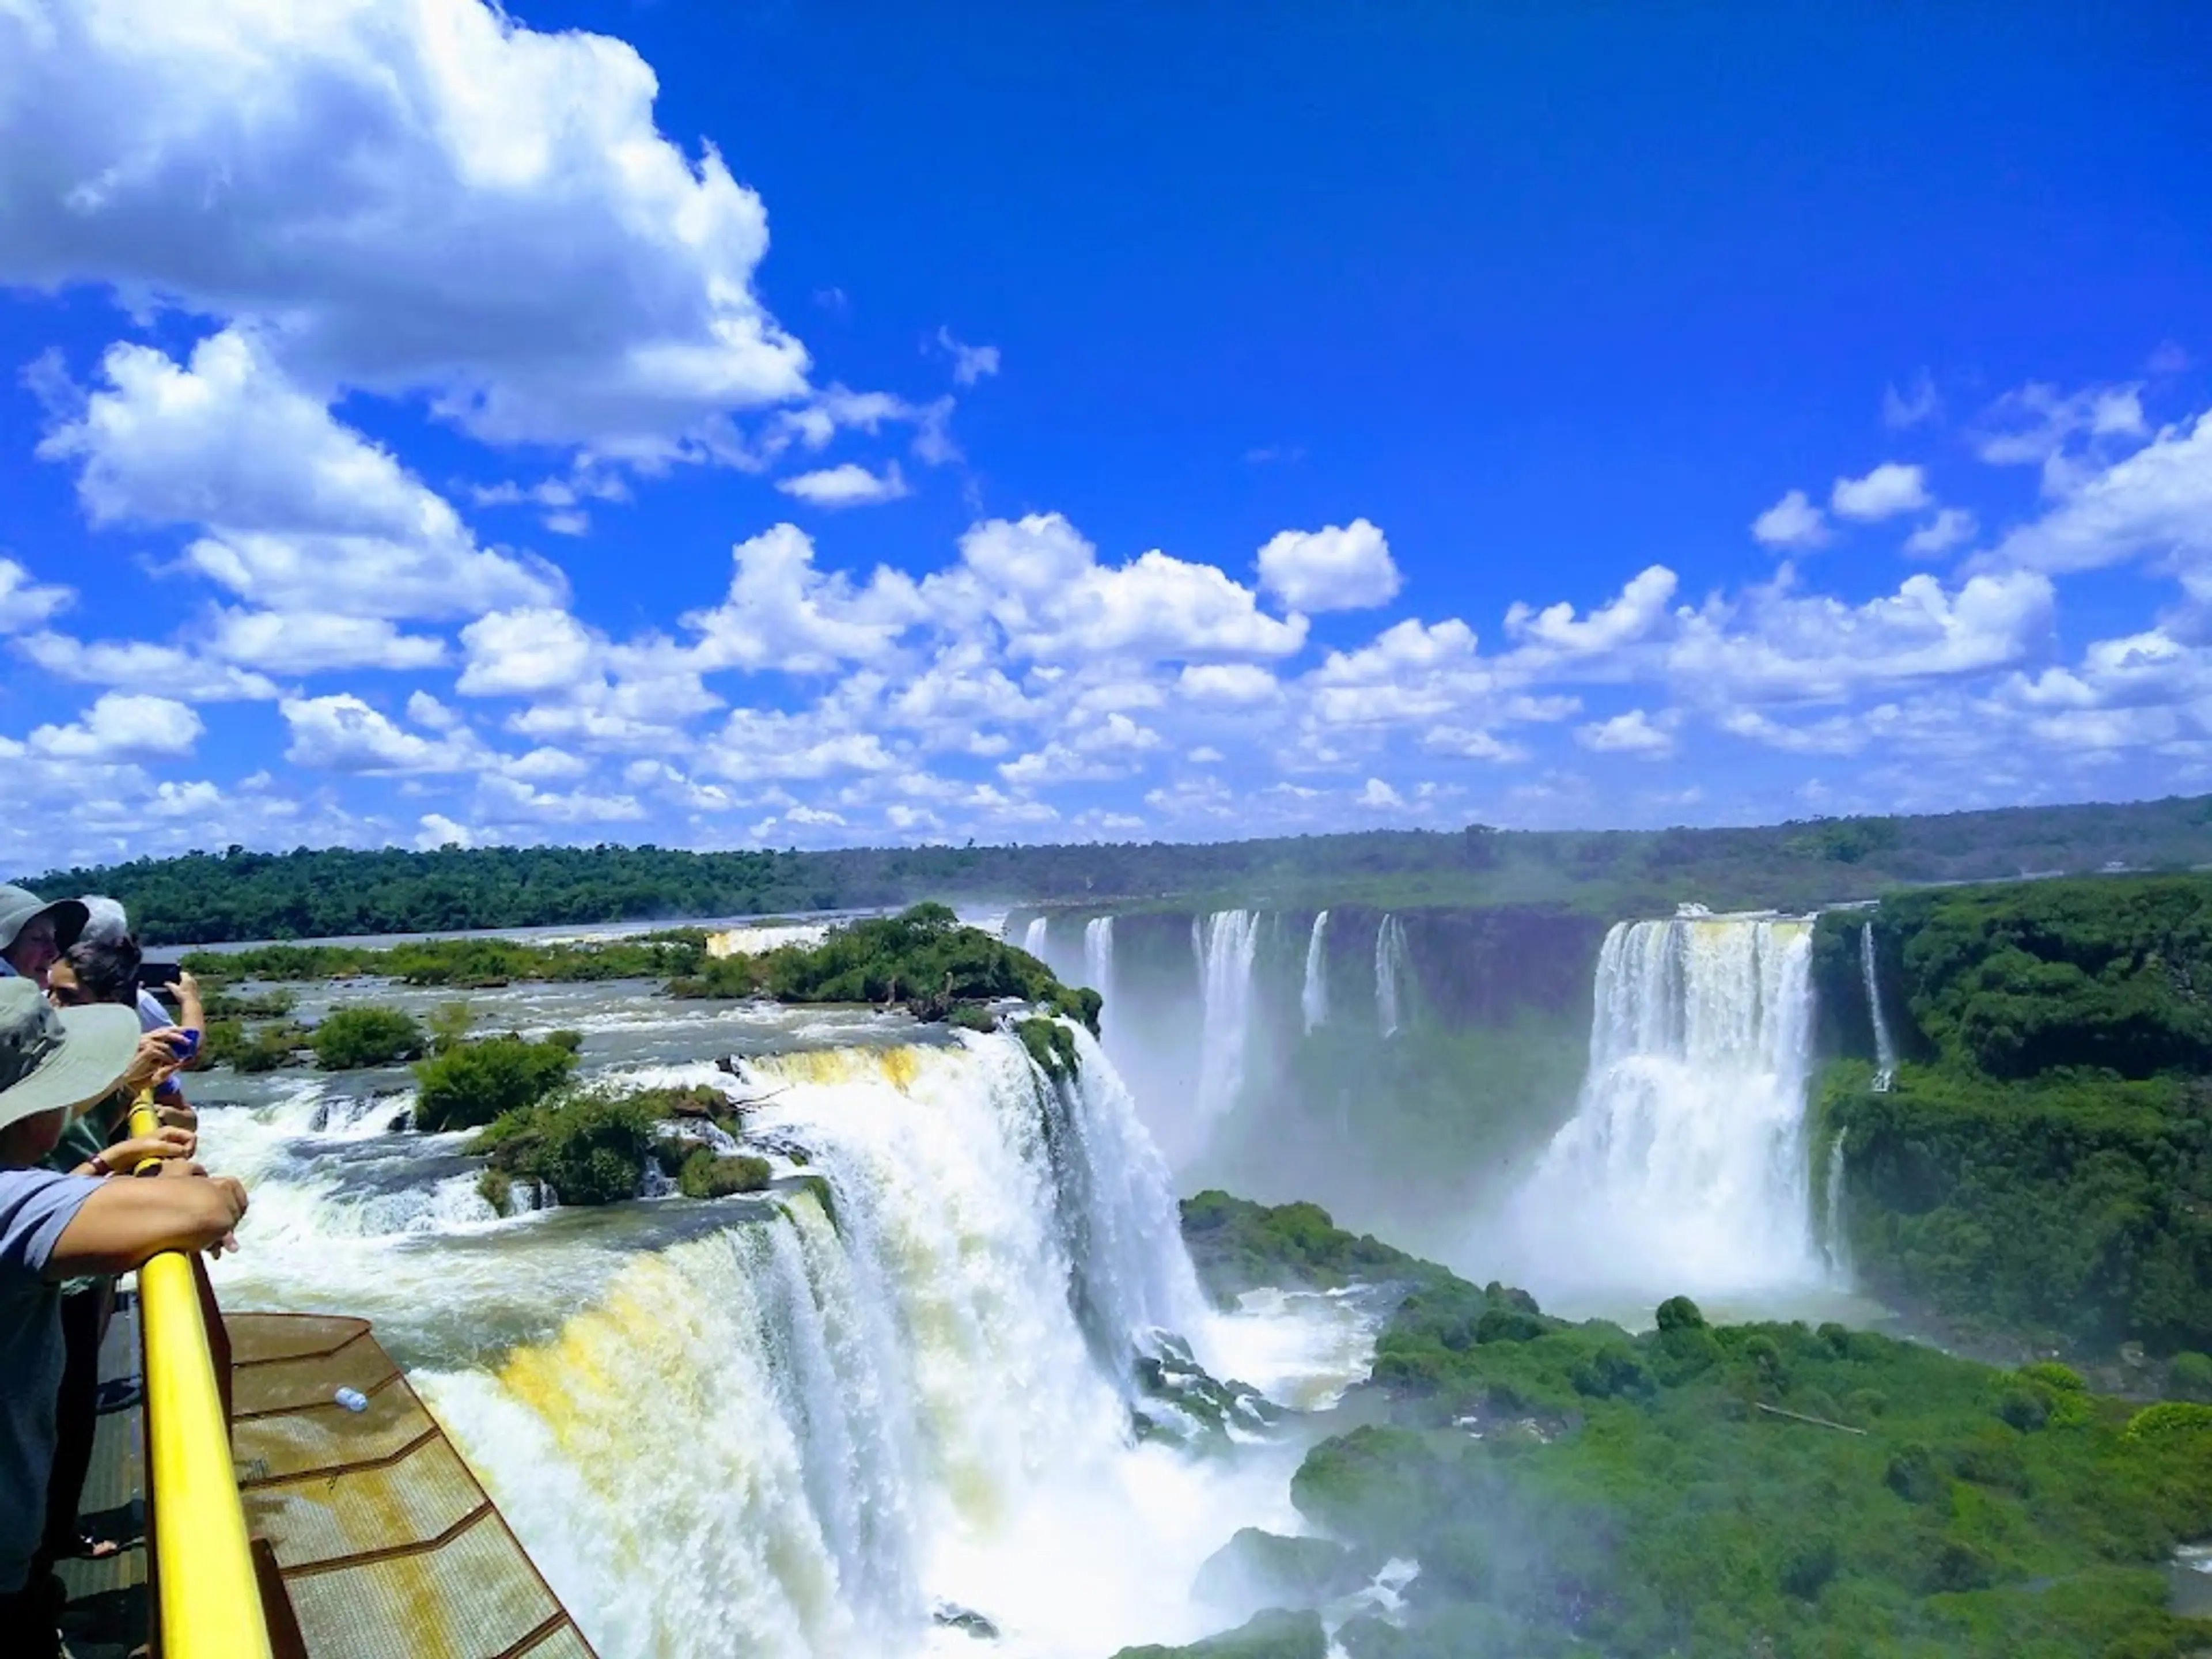 Guided tour of Iguazu Falls